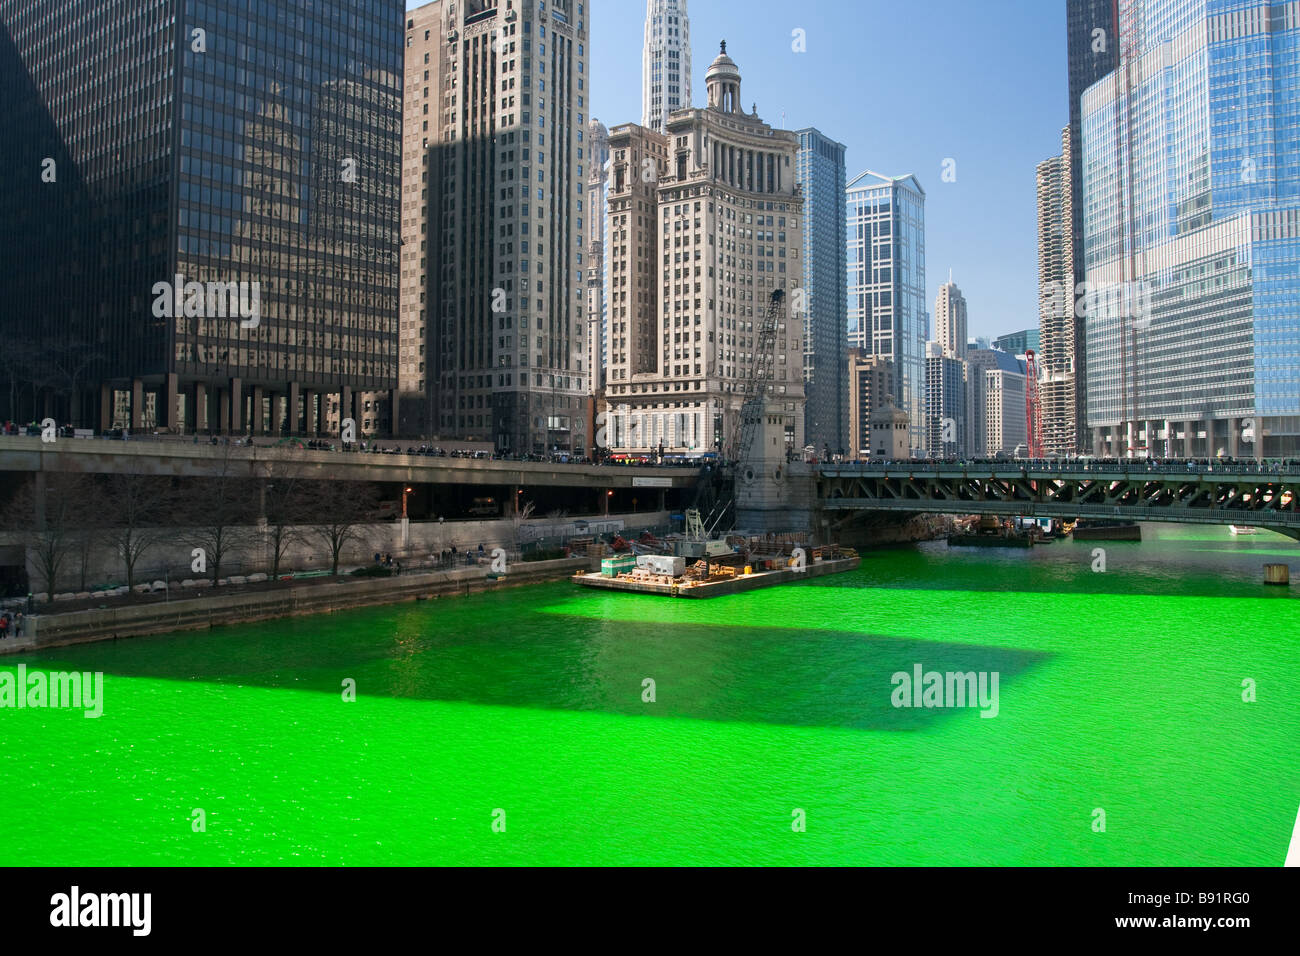 Rivière de Chicago d'être teint en vert pour la Saint-Patrick, fête - Chicago, IL Banque D'Images